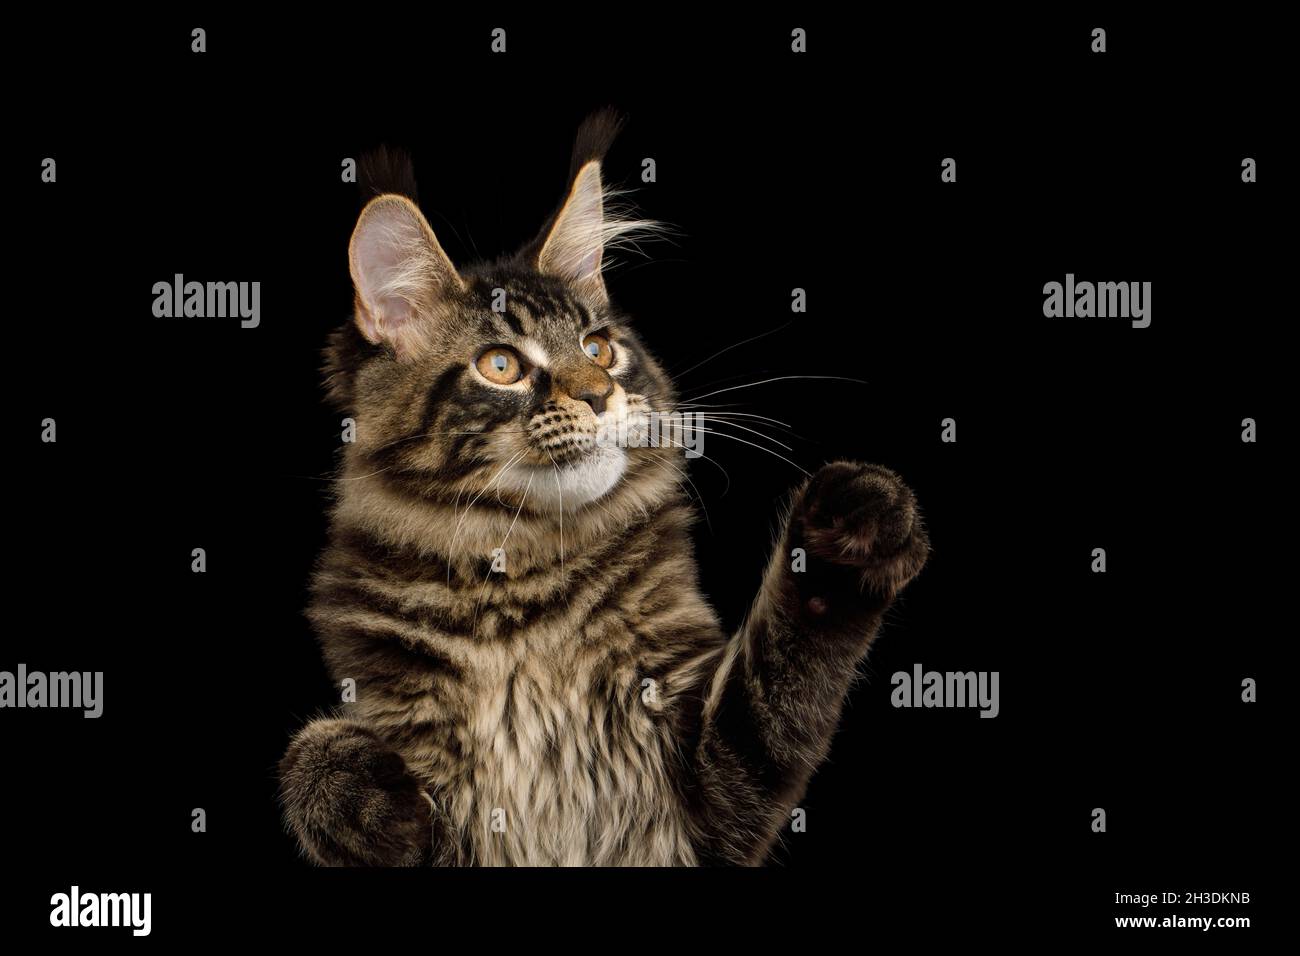 Retrato de Maine Coon Cat con borlas en sus orejas levantando la pata, aislado sobre fondo negro Foto de stock